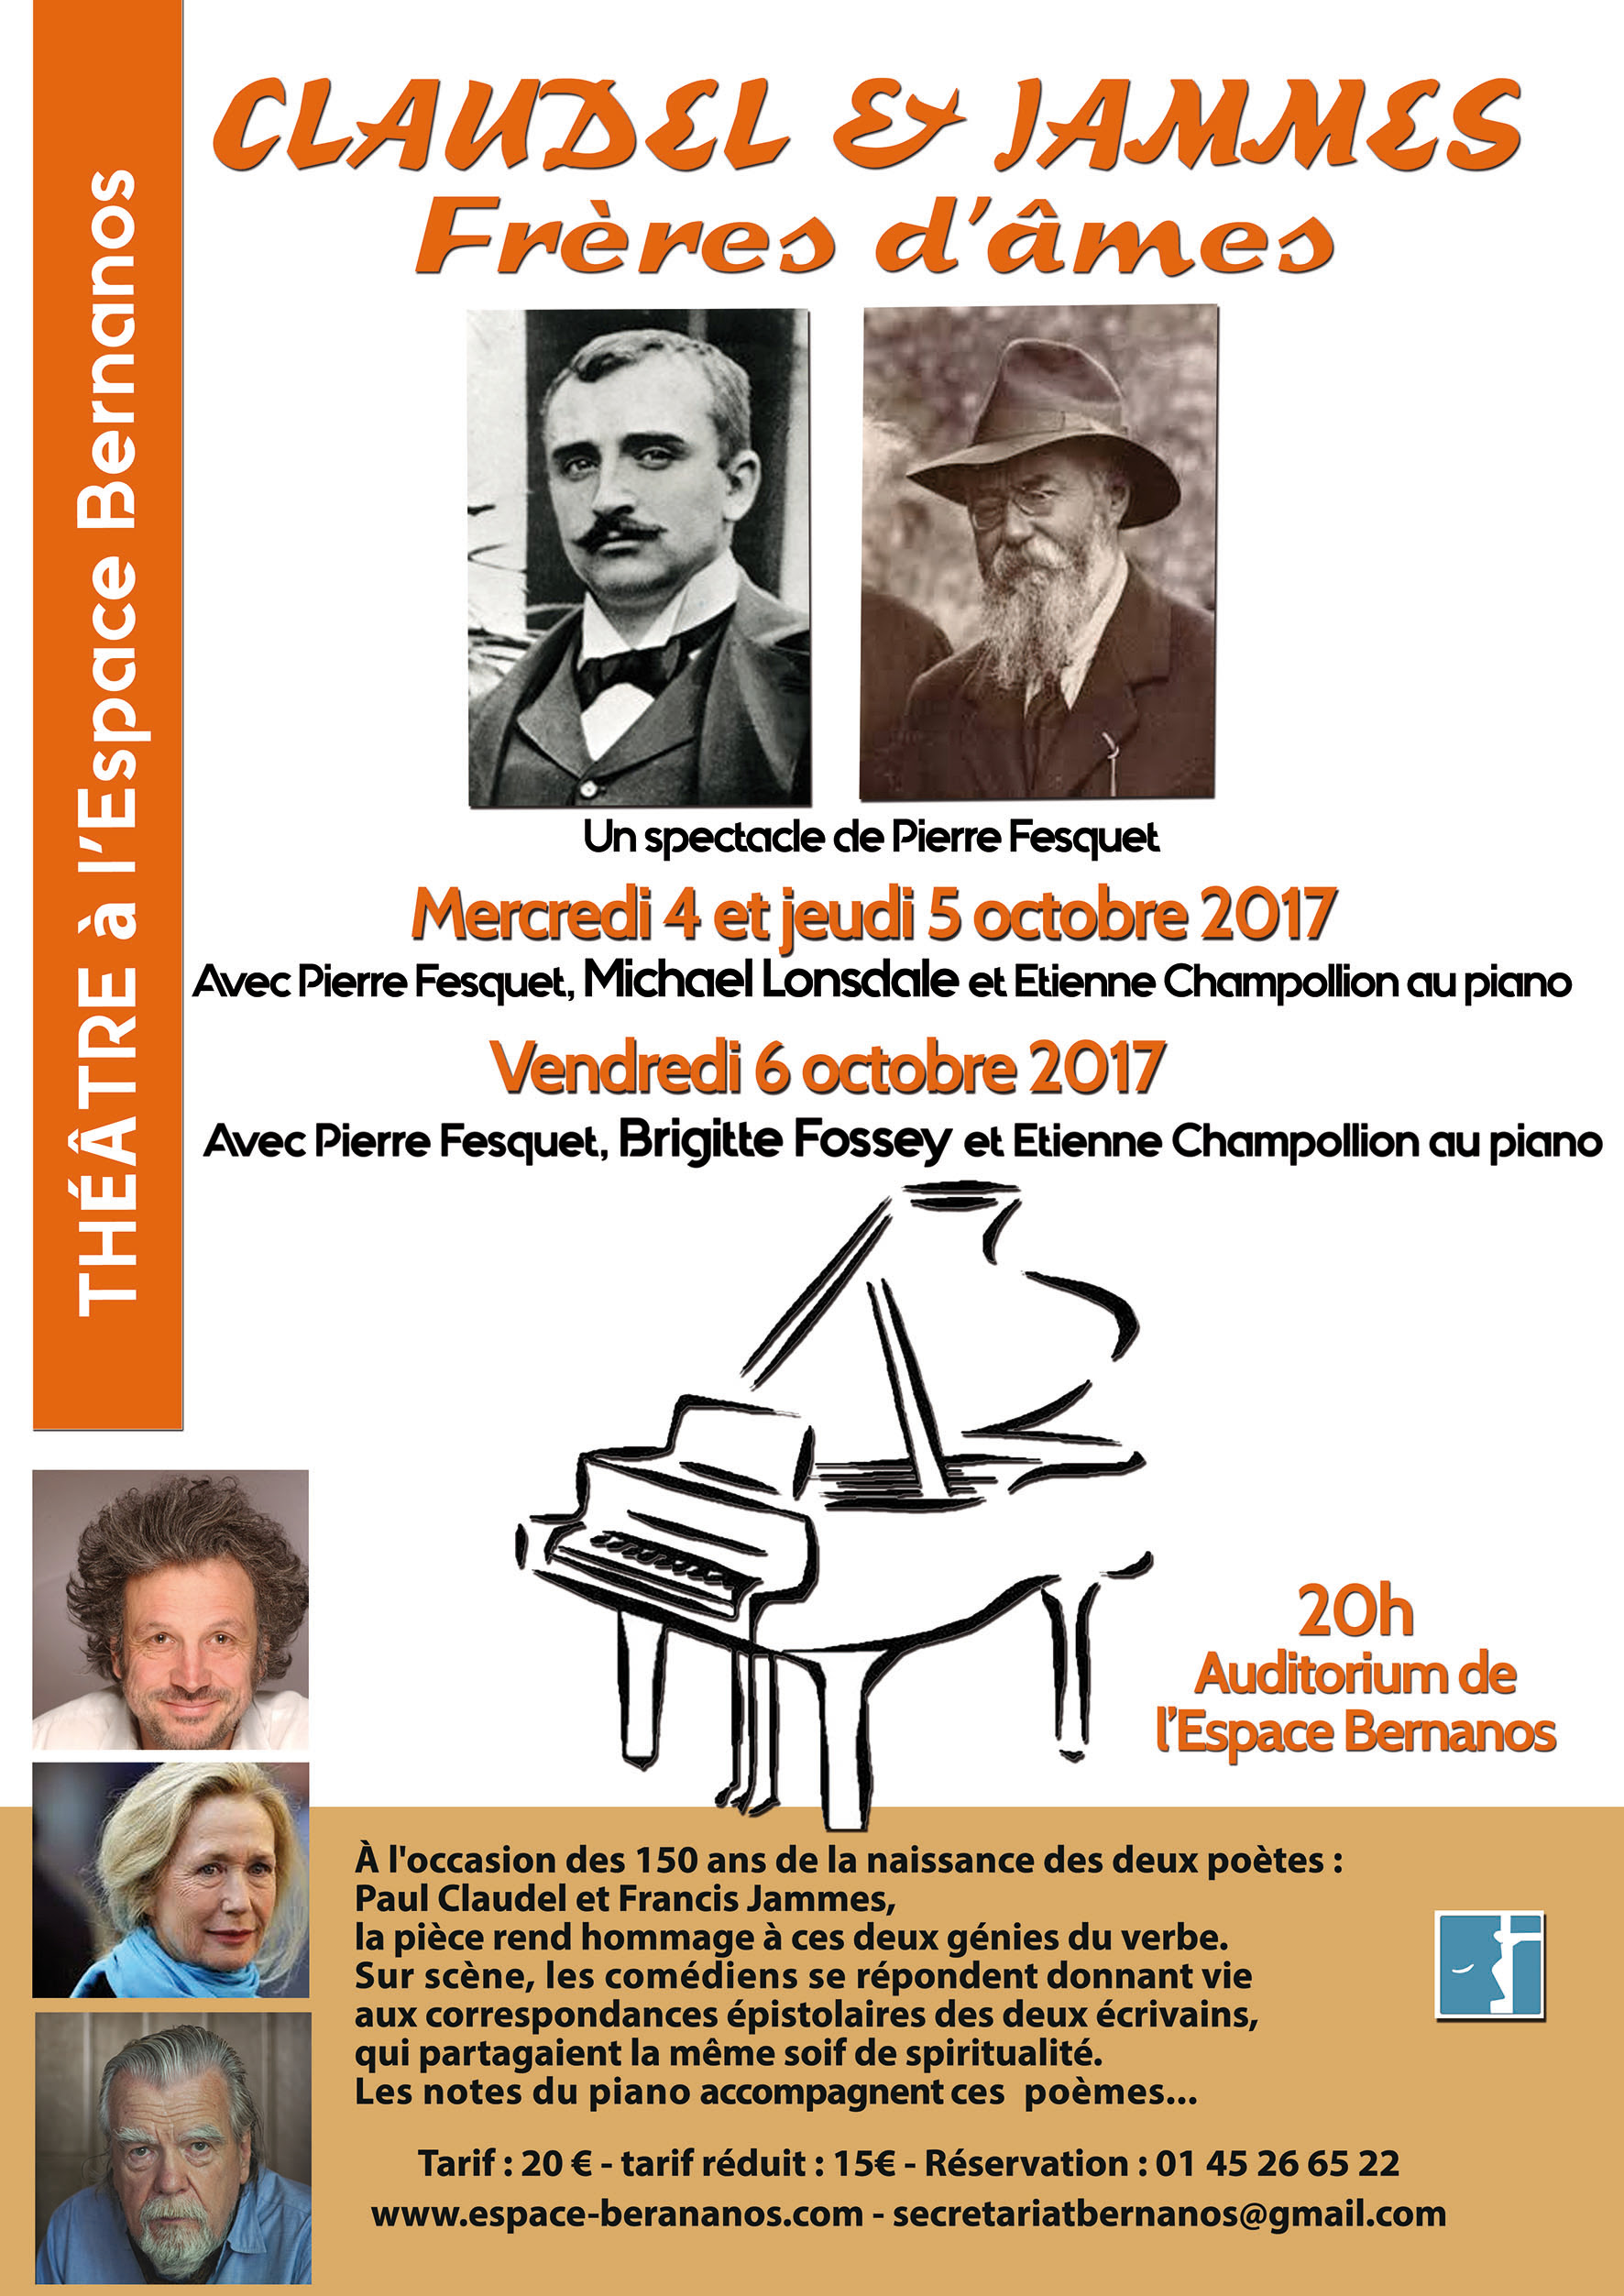 Claudel et Jammes – Frères d’âme – Spectacle à l’espace Bernanos à Paris les 4-5-6 octobre